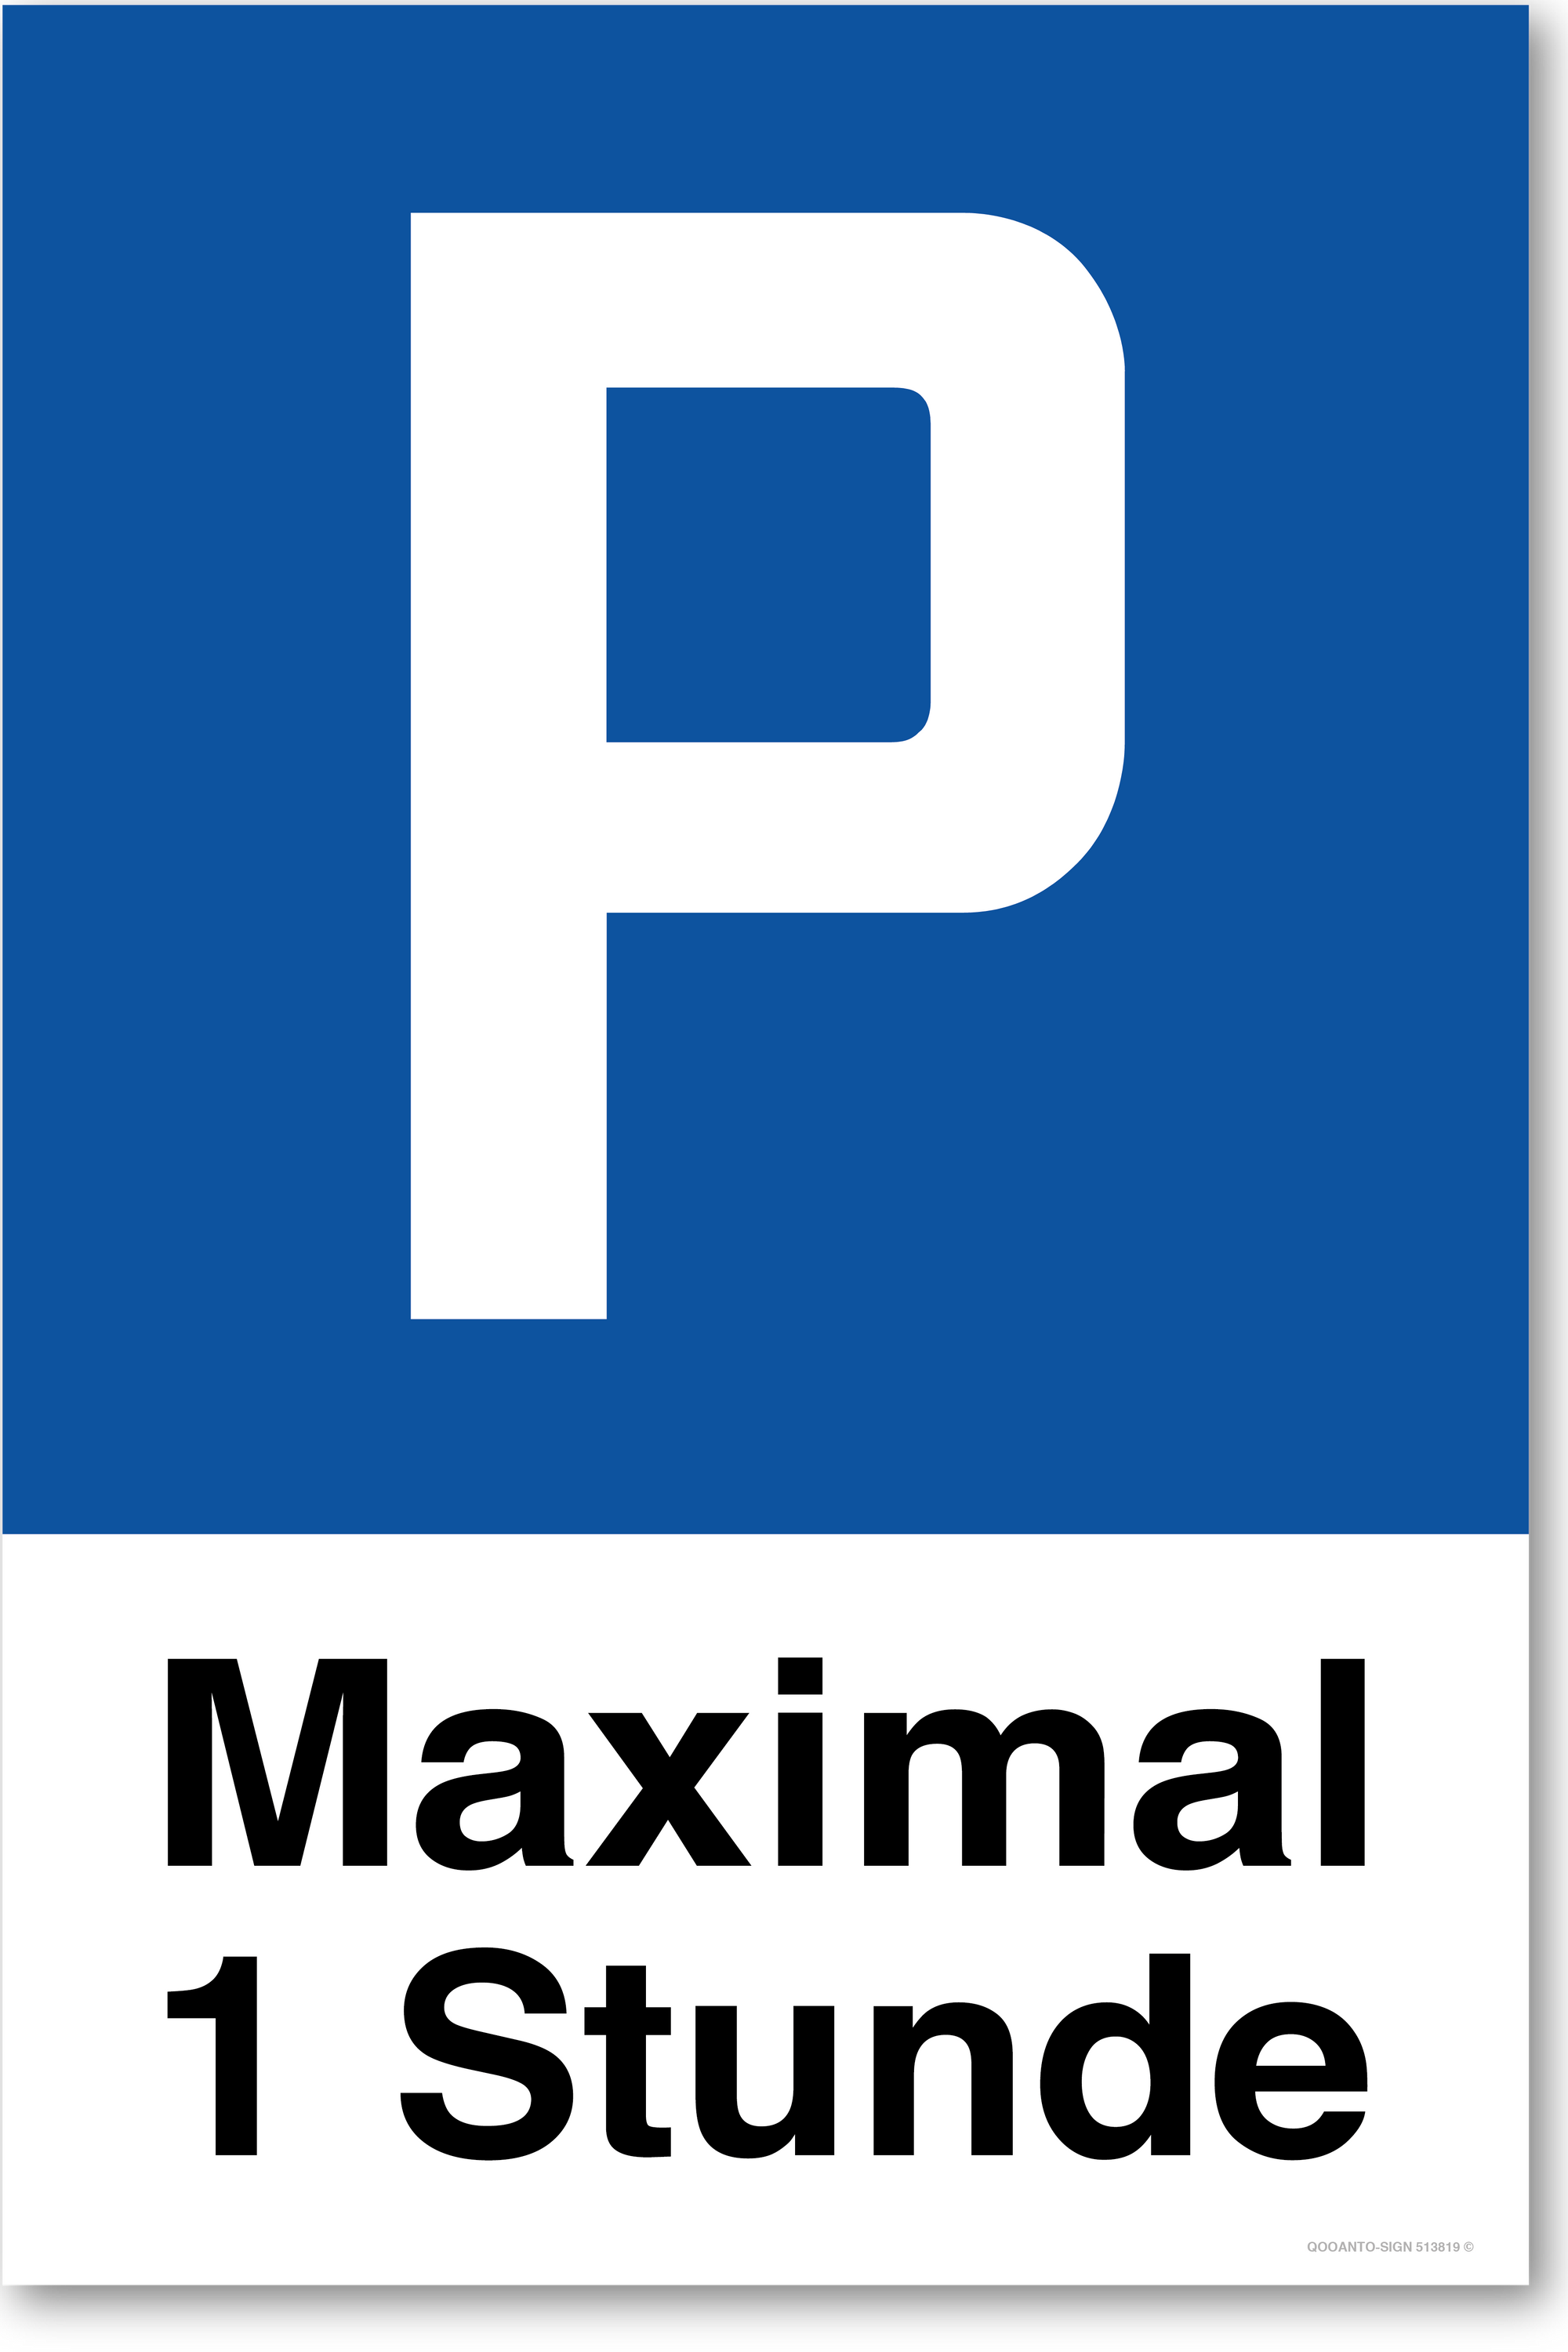 Maximal 1 Stunde - Parkplatzschild hochformat